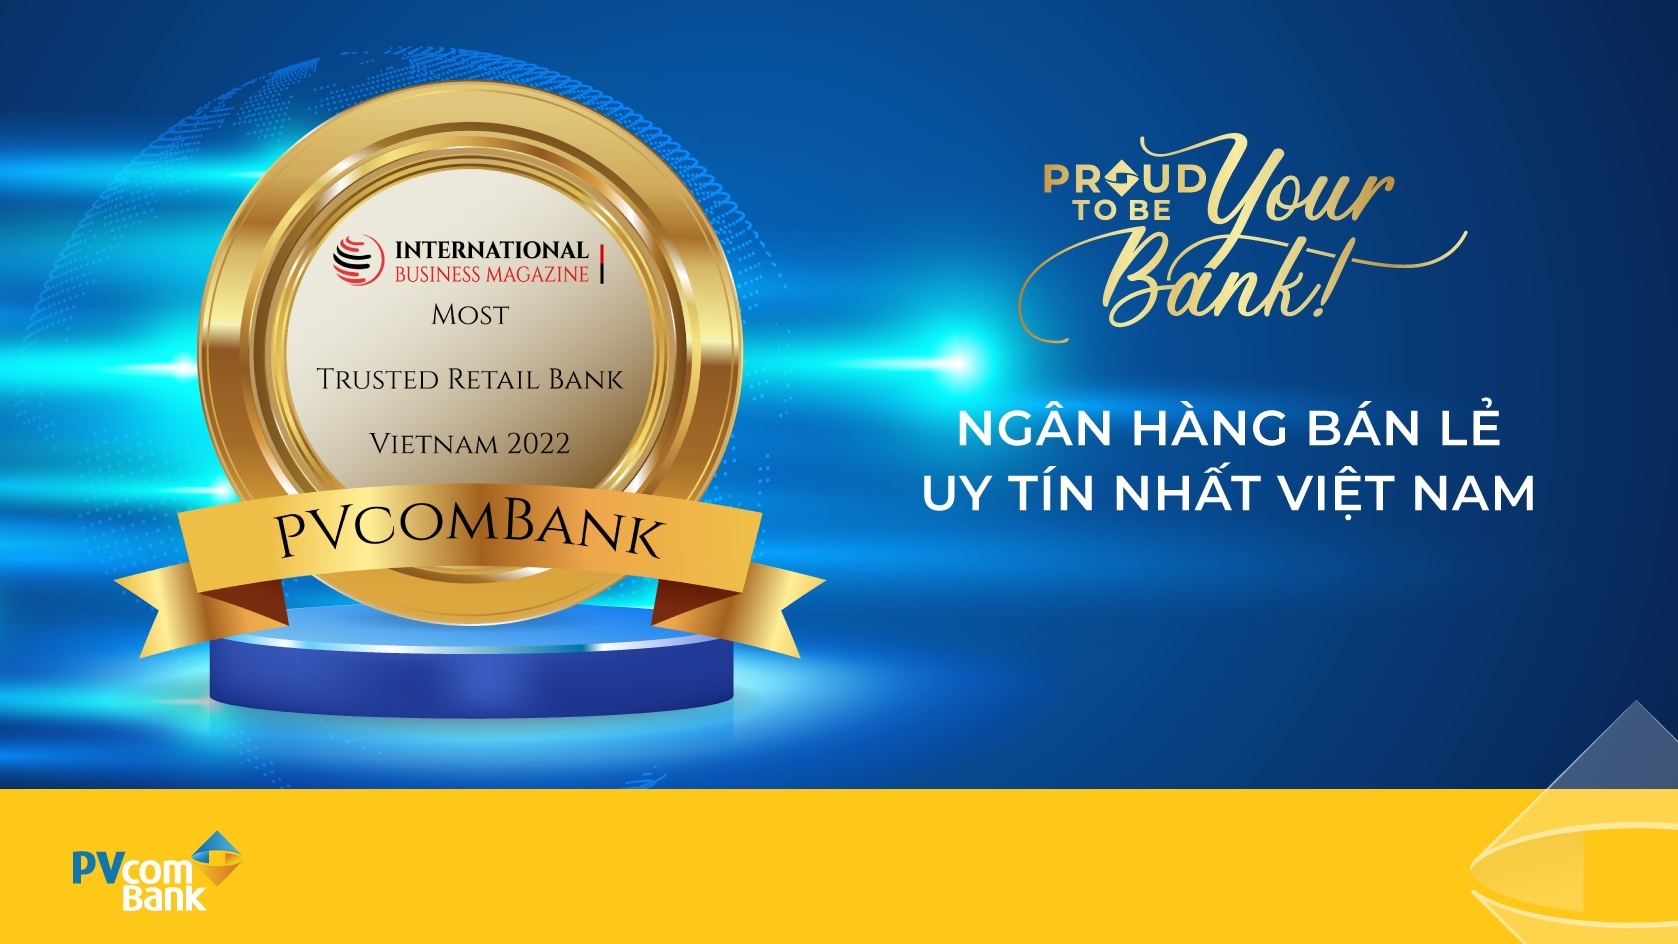 IBM chọn PVcomBank là ngân hàng có dịch vụ khách hàng tốt nhất và bán lẻ uy tín nhất